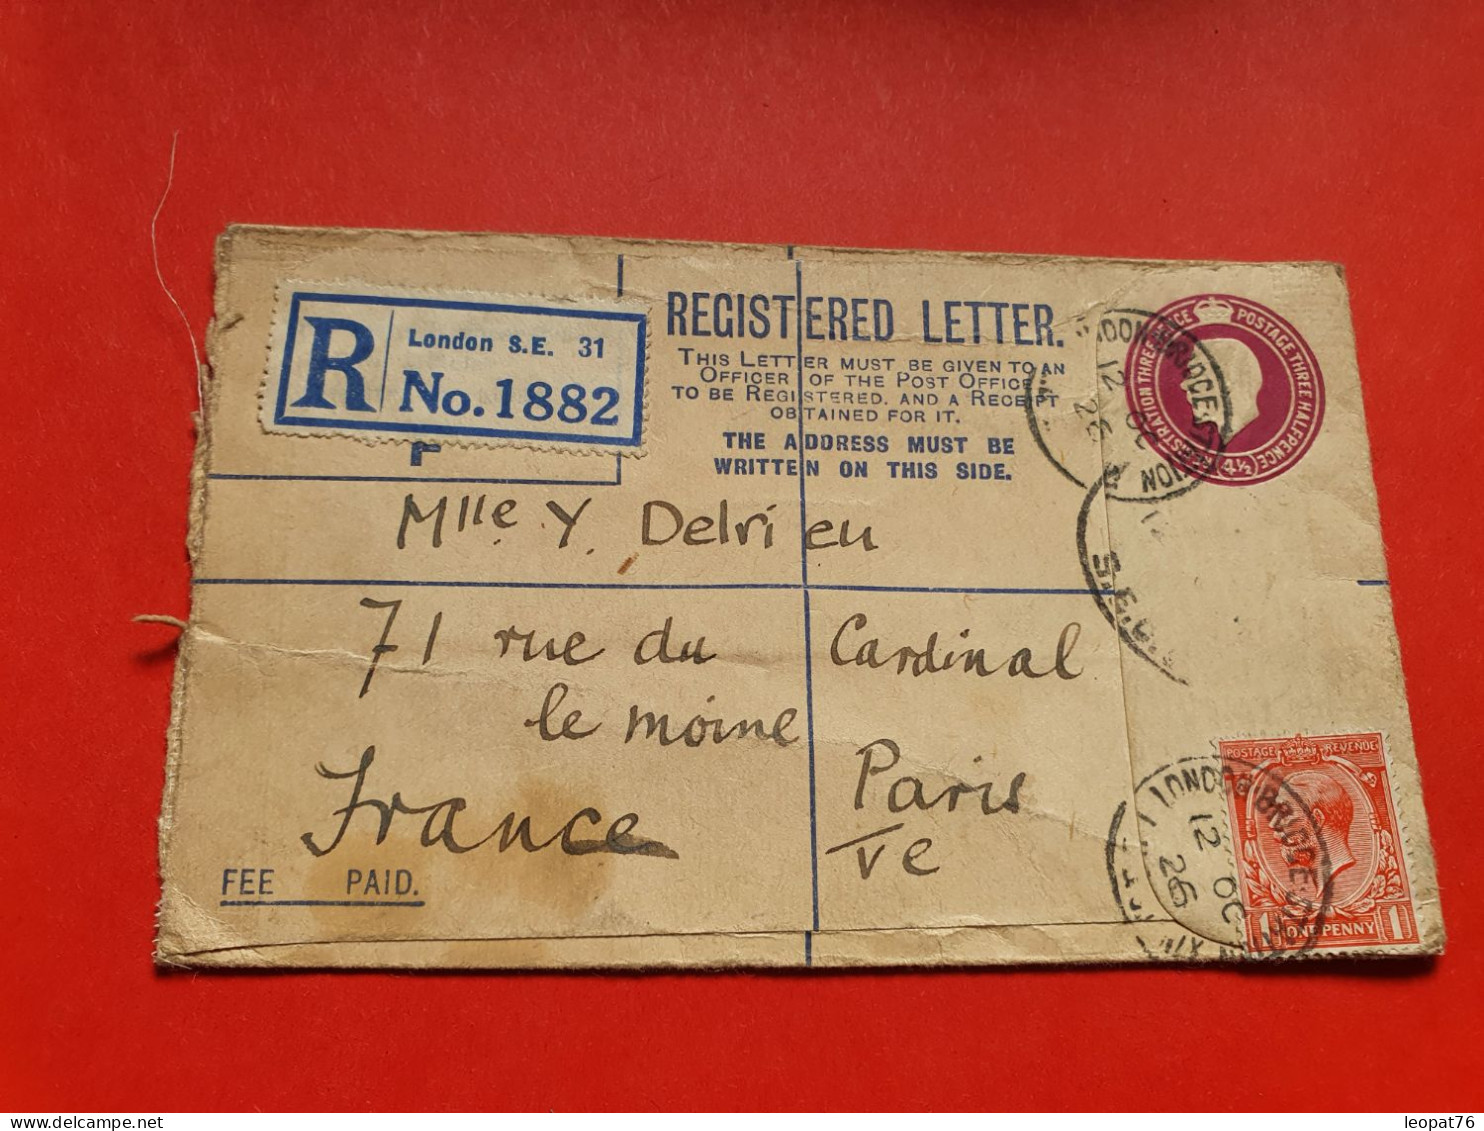 GB - Entier Postal En Recommandé De Londres Pour Paris En 1926, ( Compléments Incomplet ) - Réf 1677 - Material Postal